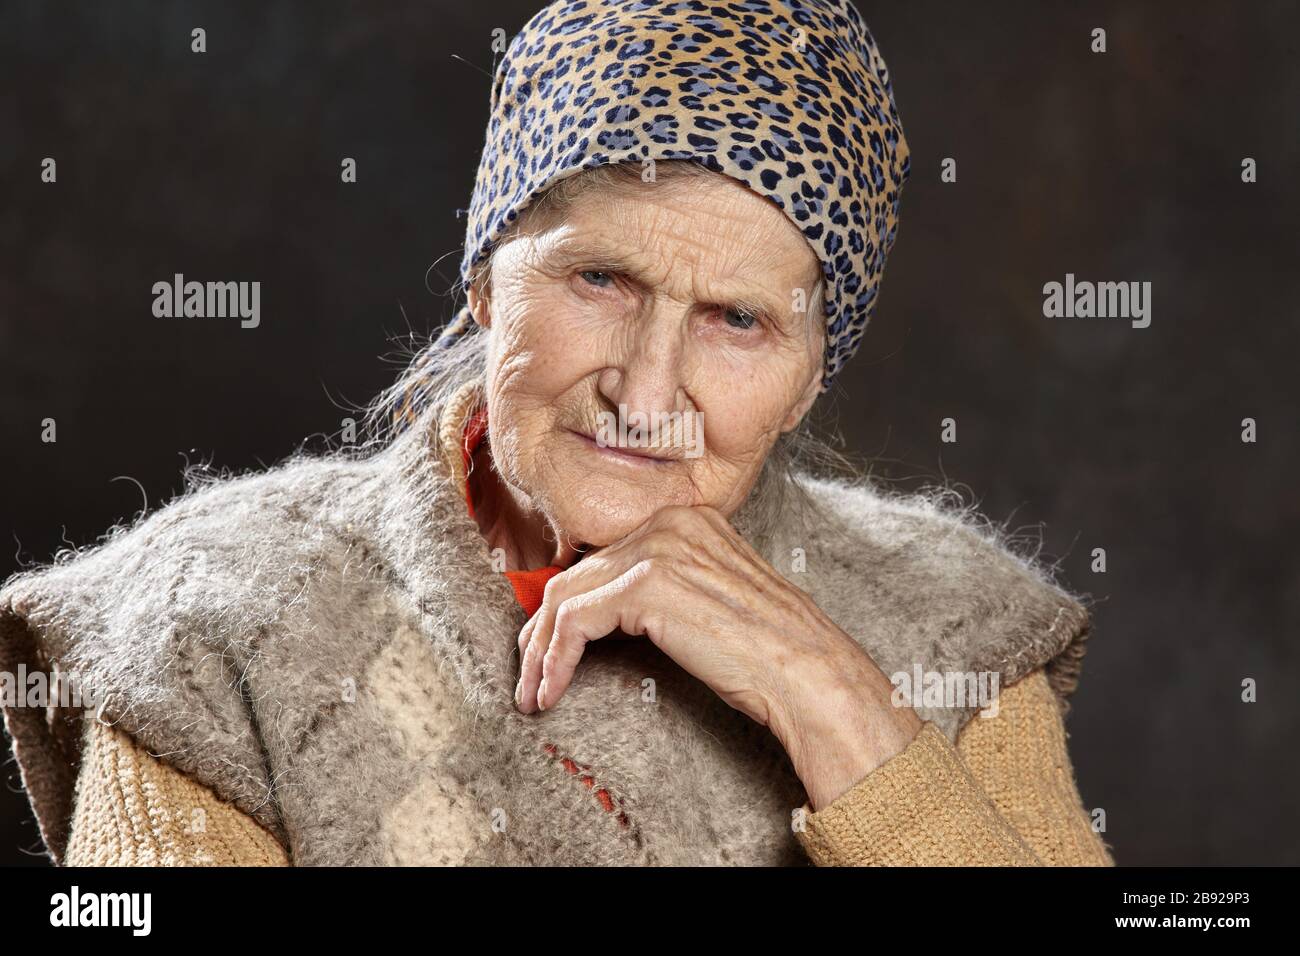 Portrait en gros plan de la vieille femme avec un aspect réfléchi sur un arrière-plan sombre.Les personnes de cet âge sont les plus vulnérables pendant les épidémies . Banque D'Images